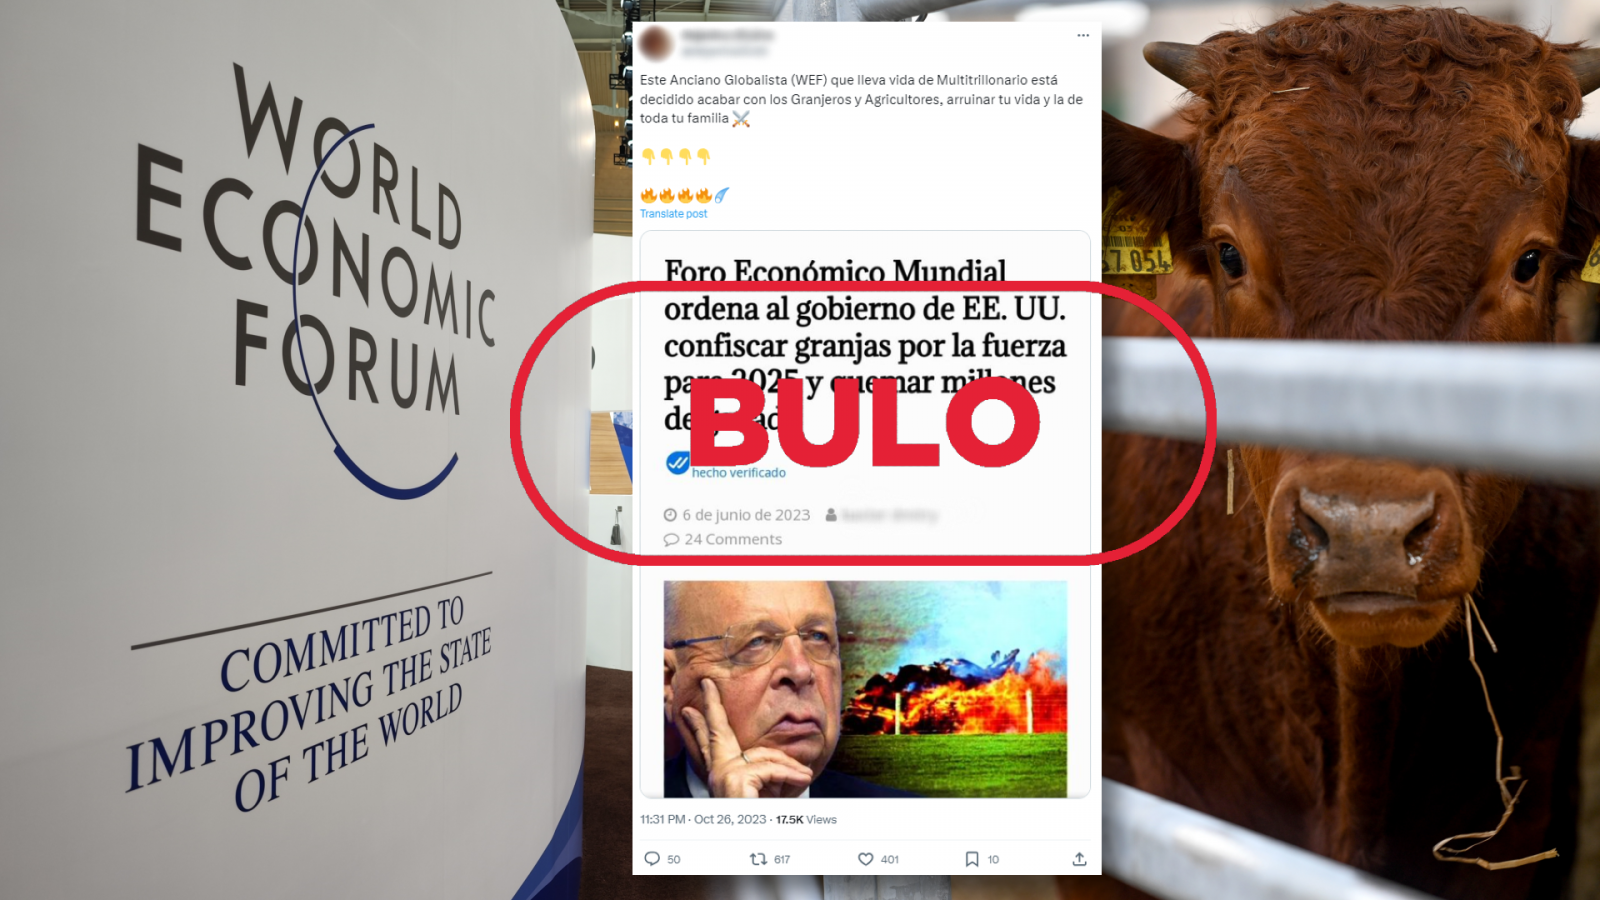 El Foro Económico Mundial no ha ordenado la incautación de granjas y la quema de ganado para 2025 como difunde este mensaje de X, con el sello Bulo en rojo de VerificaRTVE.